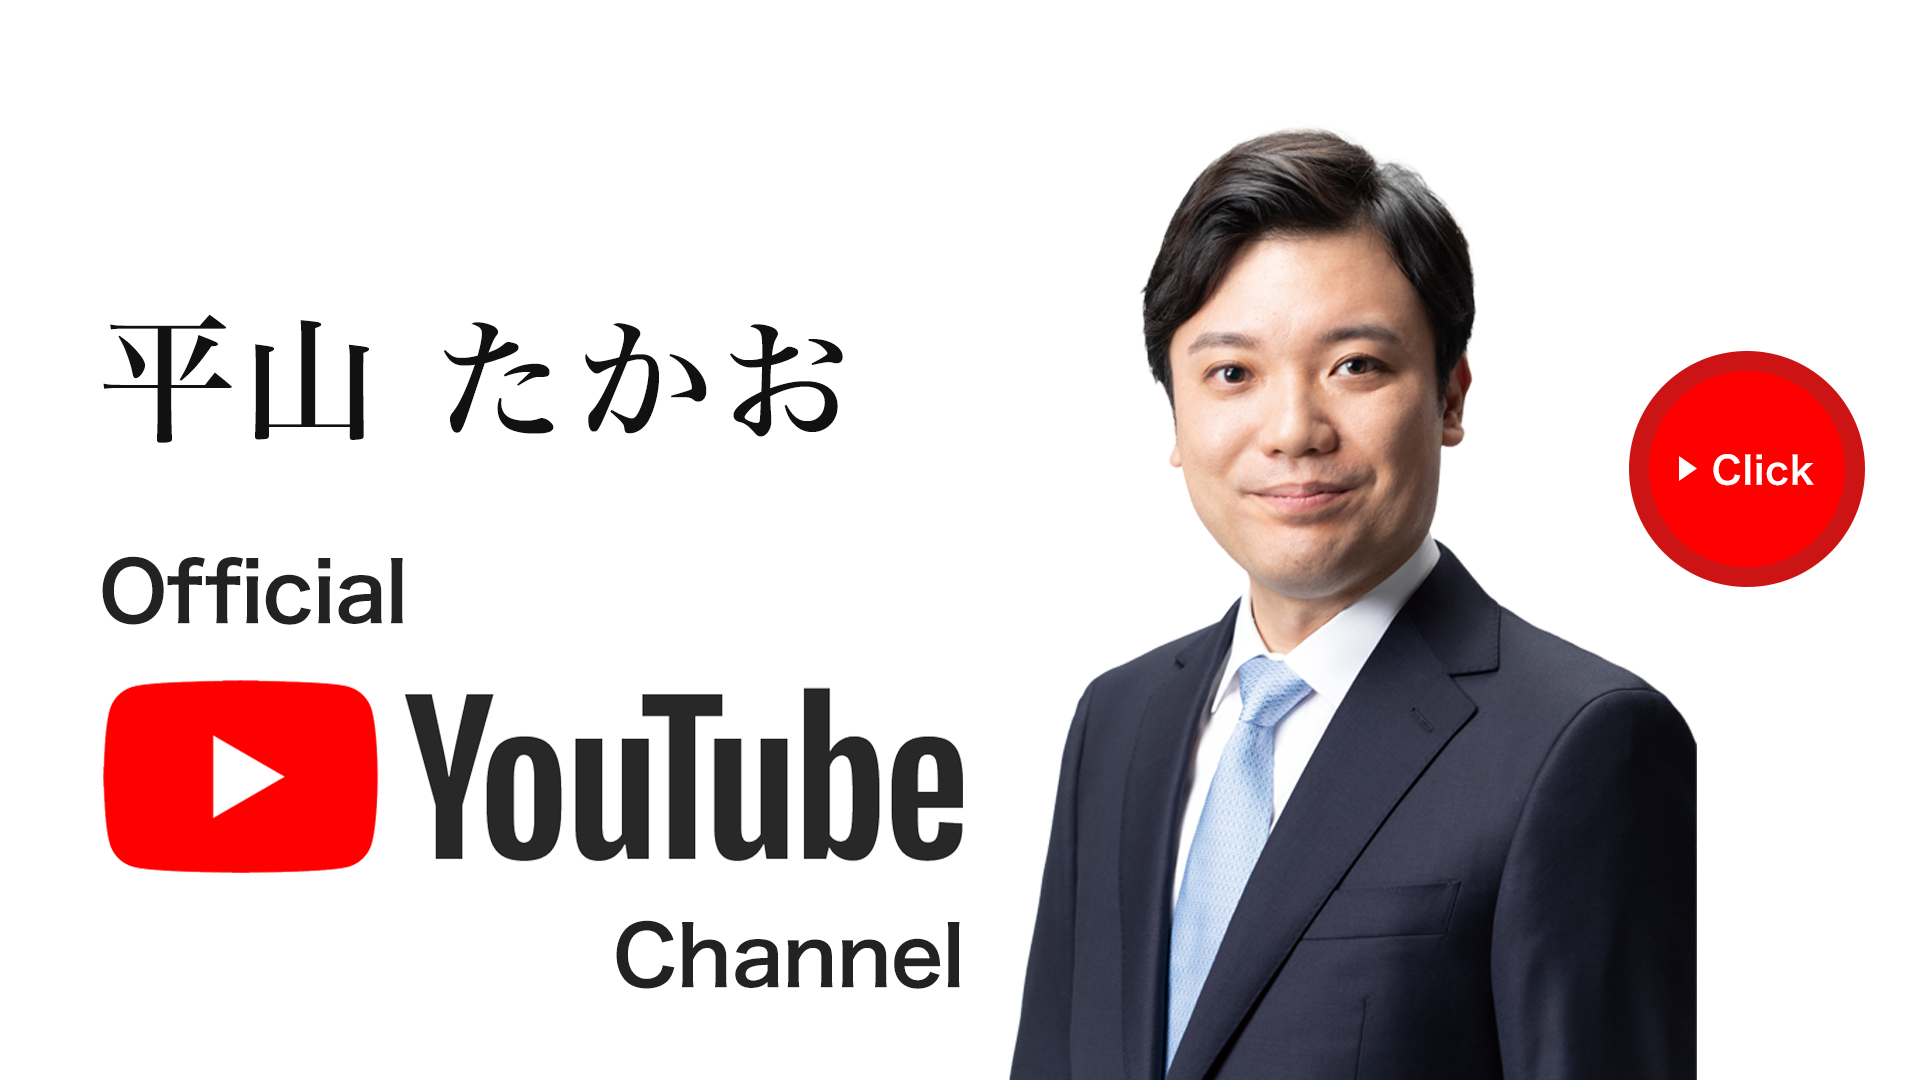 平山たかおオフィシャルYoutubeチャンネル